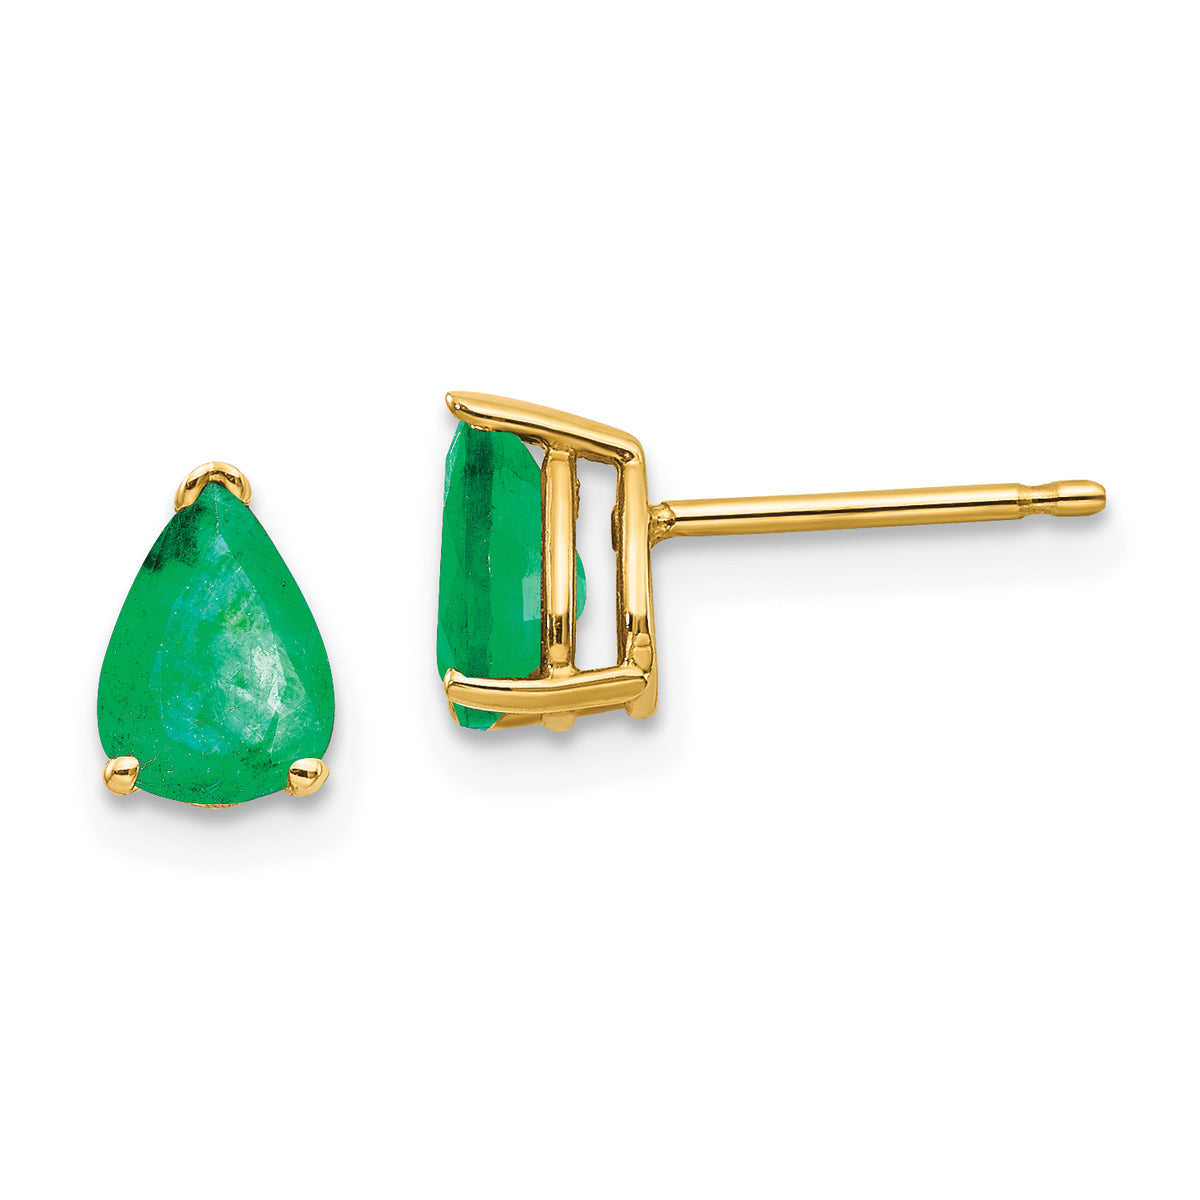 14k Emerald Post Earrings